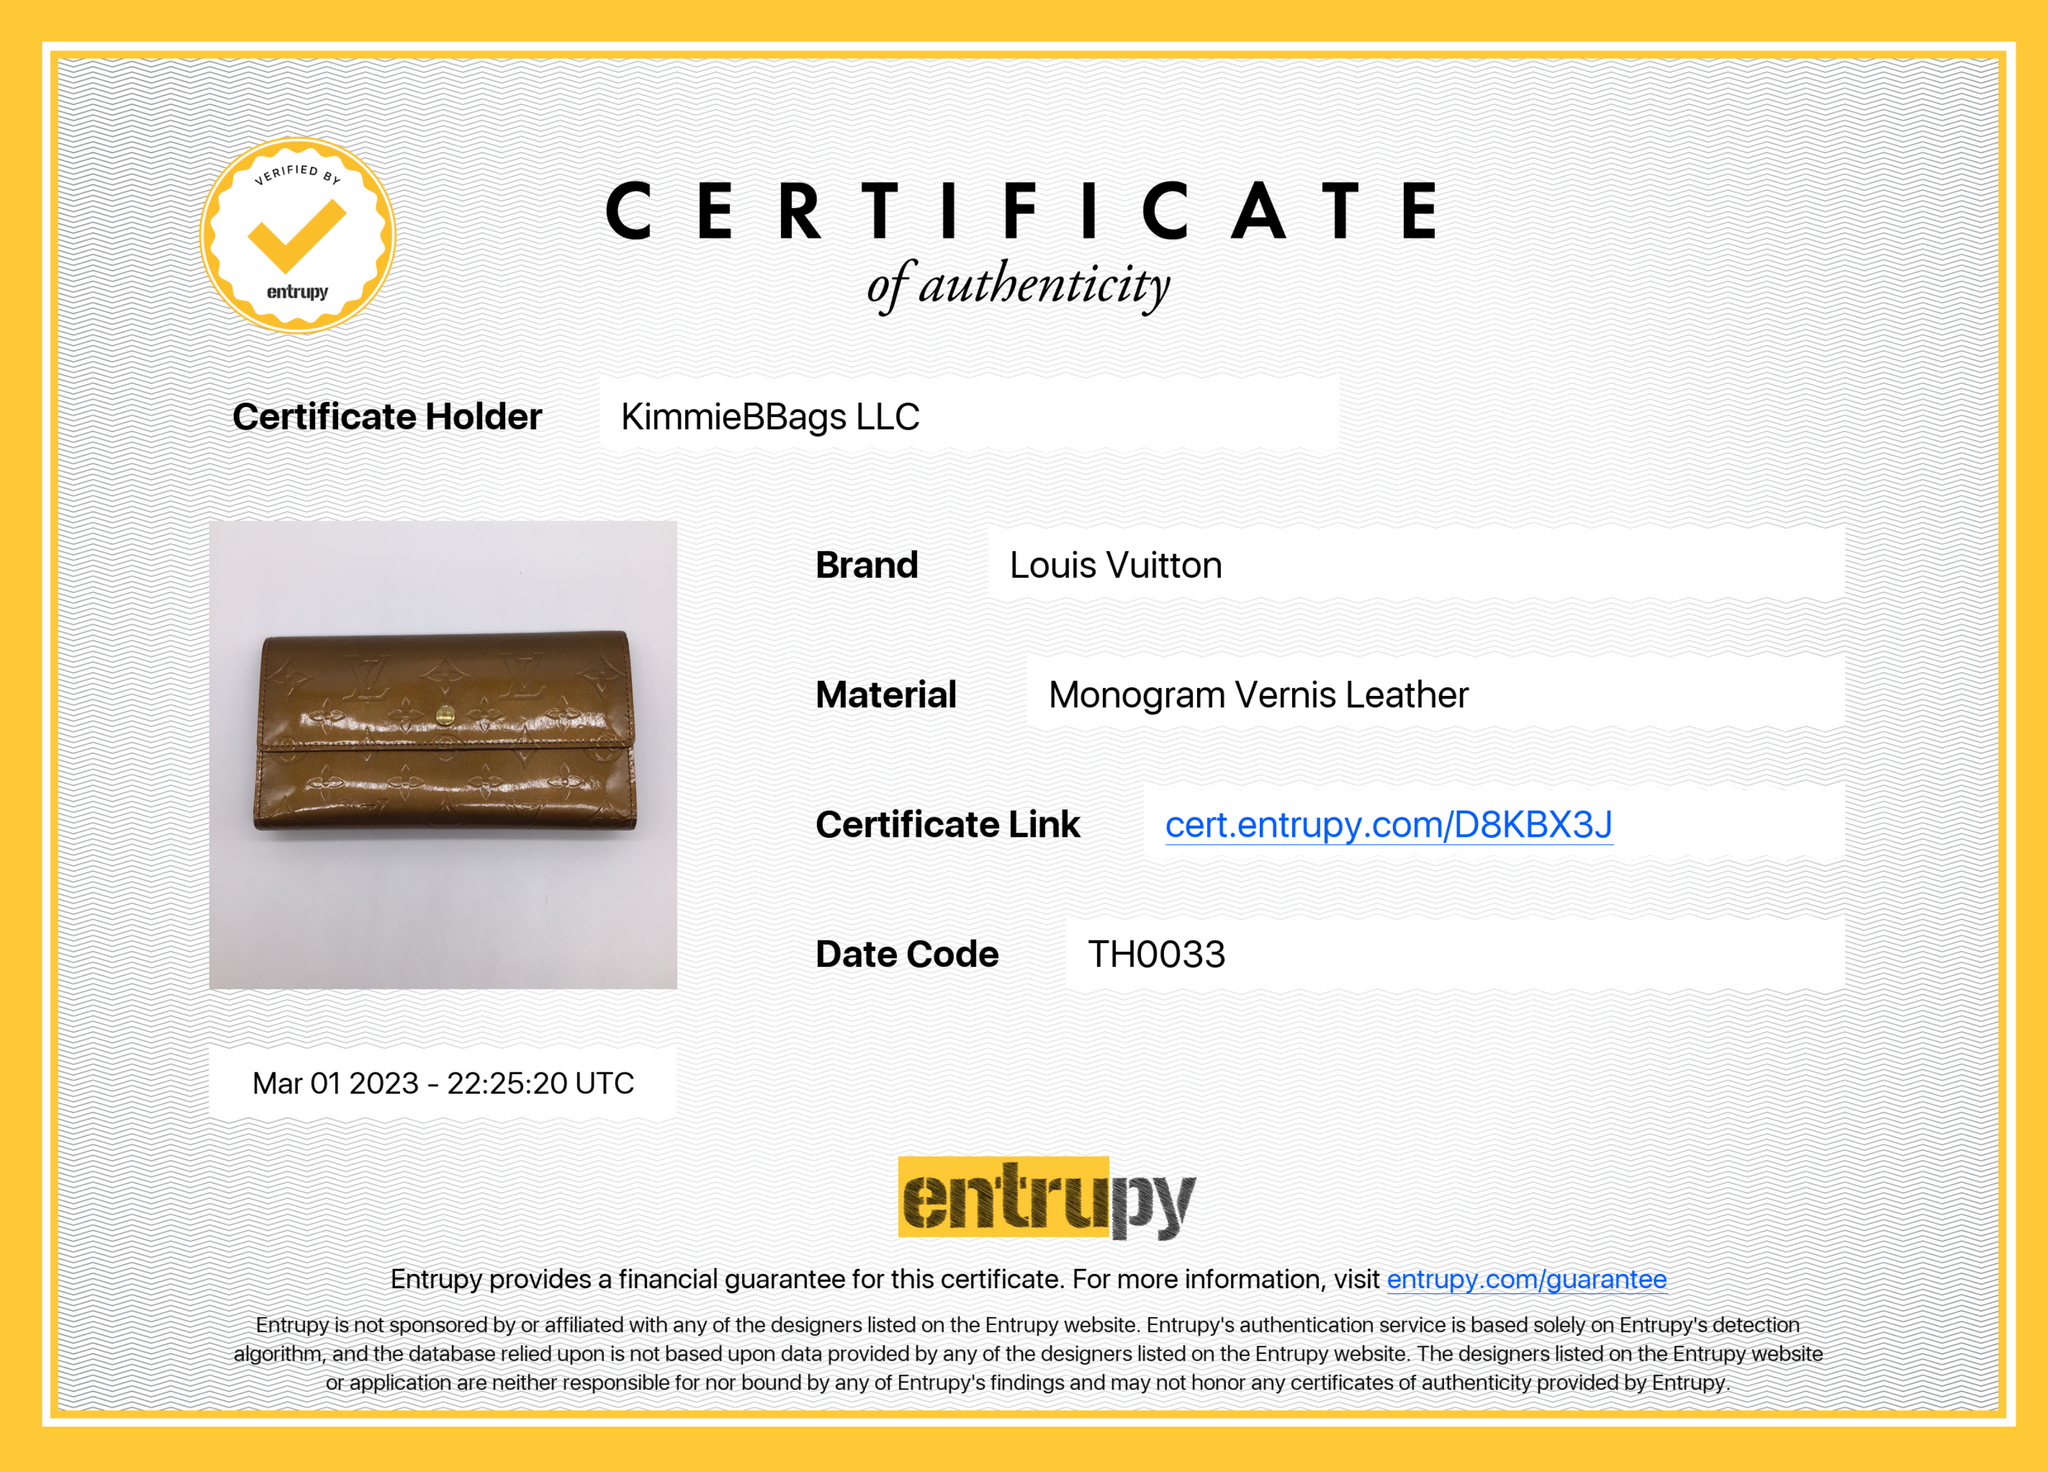 Louis Vuitton Keychain Wallet Brown - $200 (33% Off Retail) - From Erin